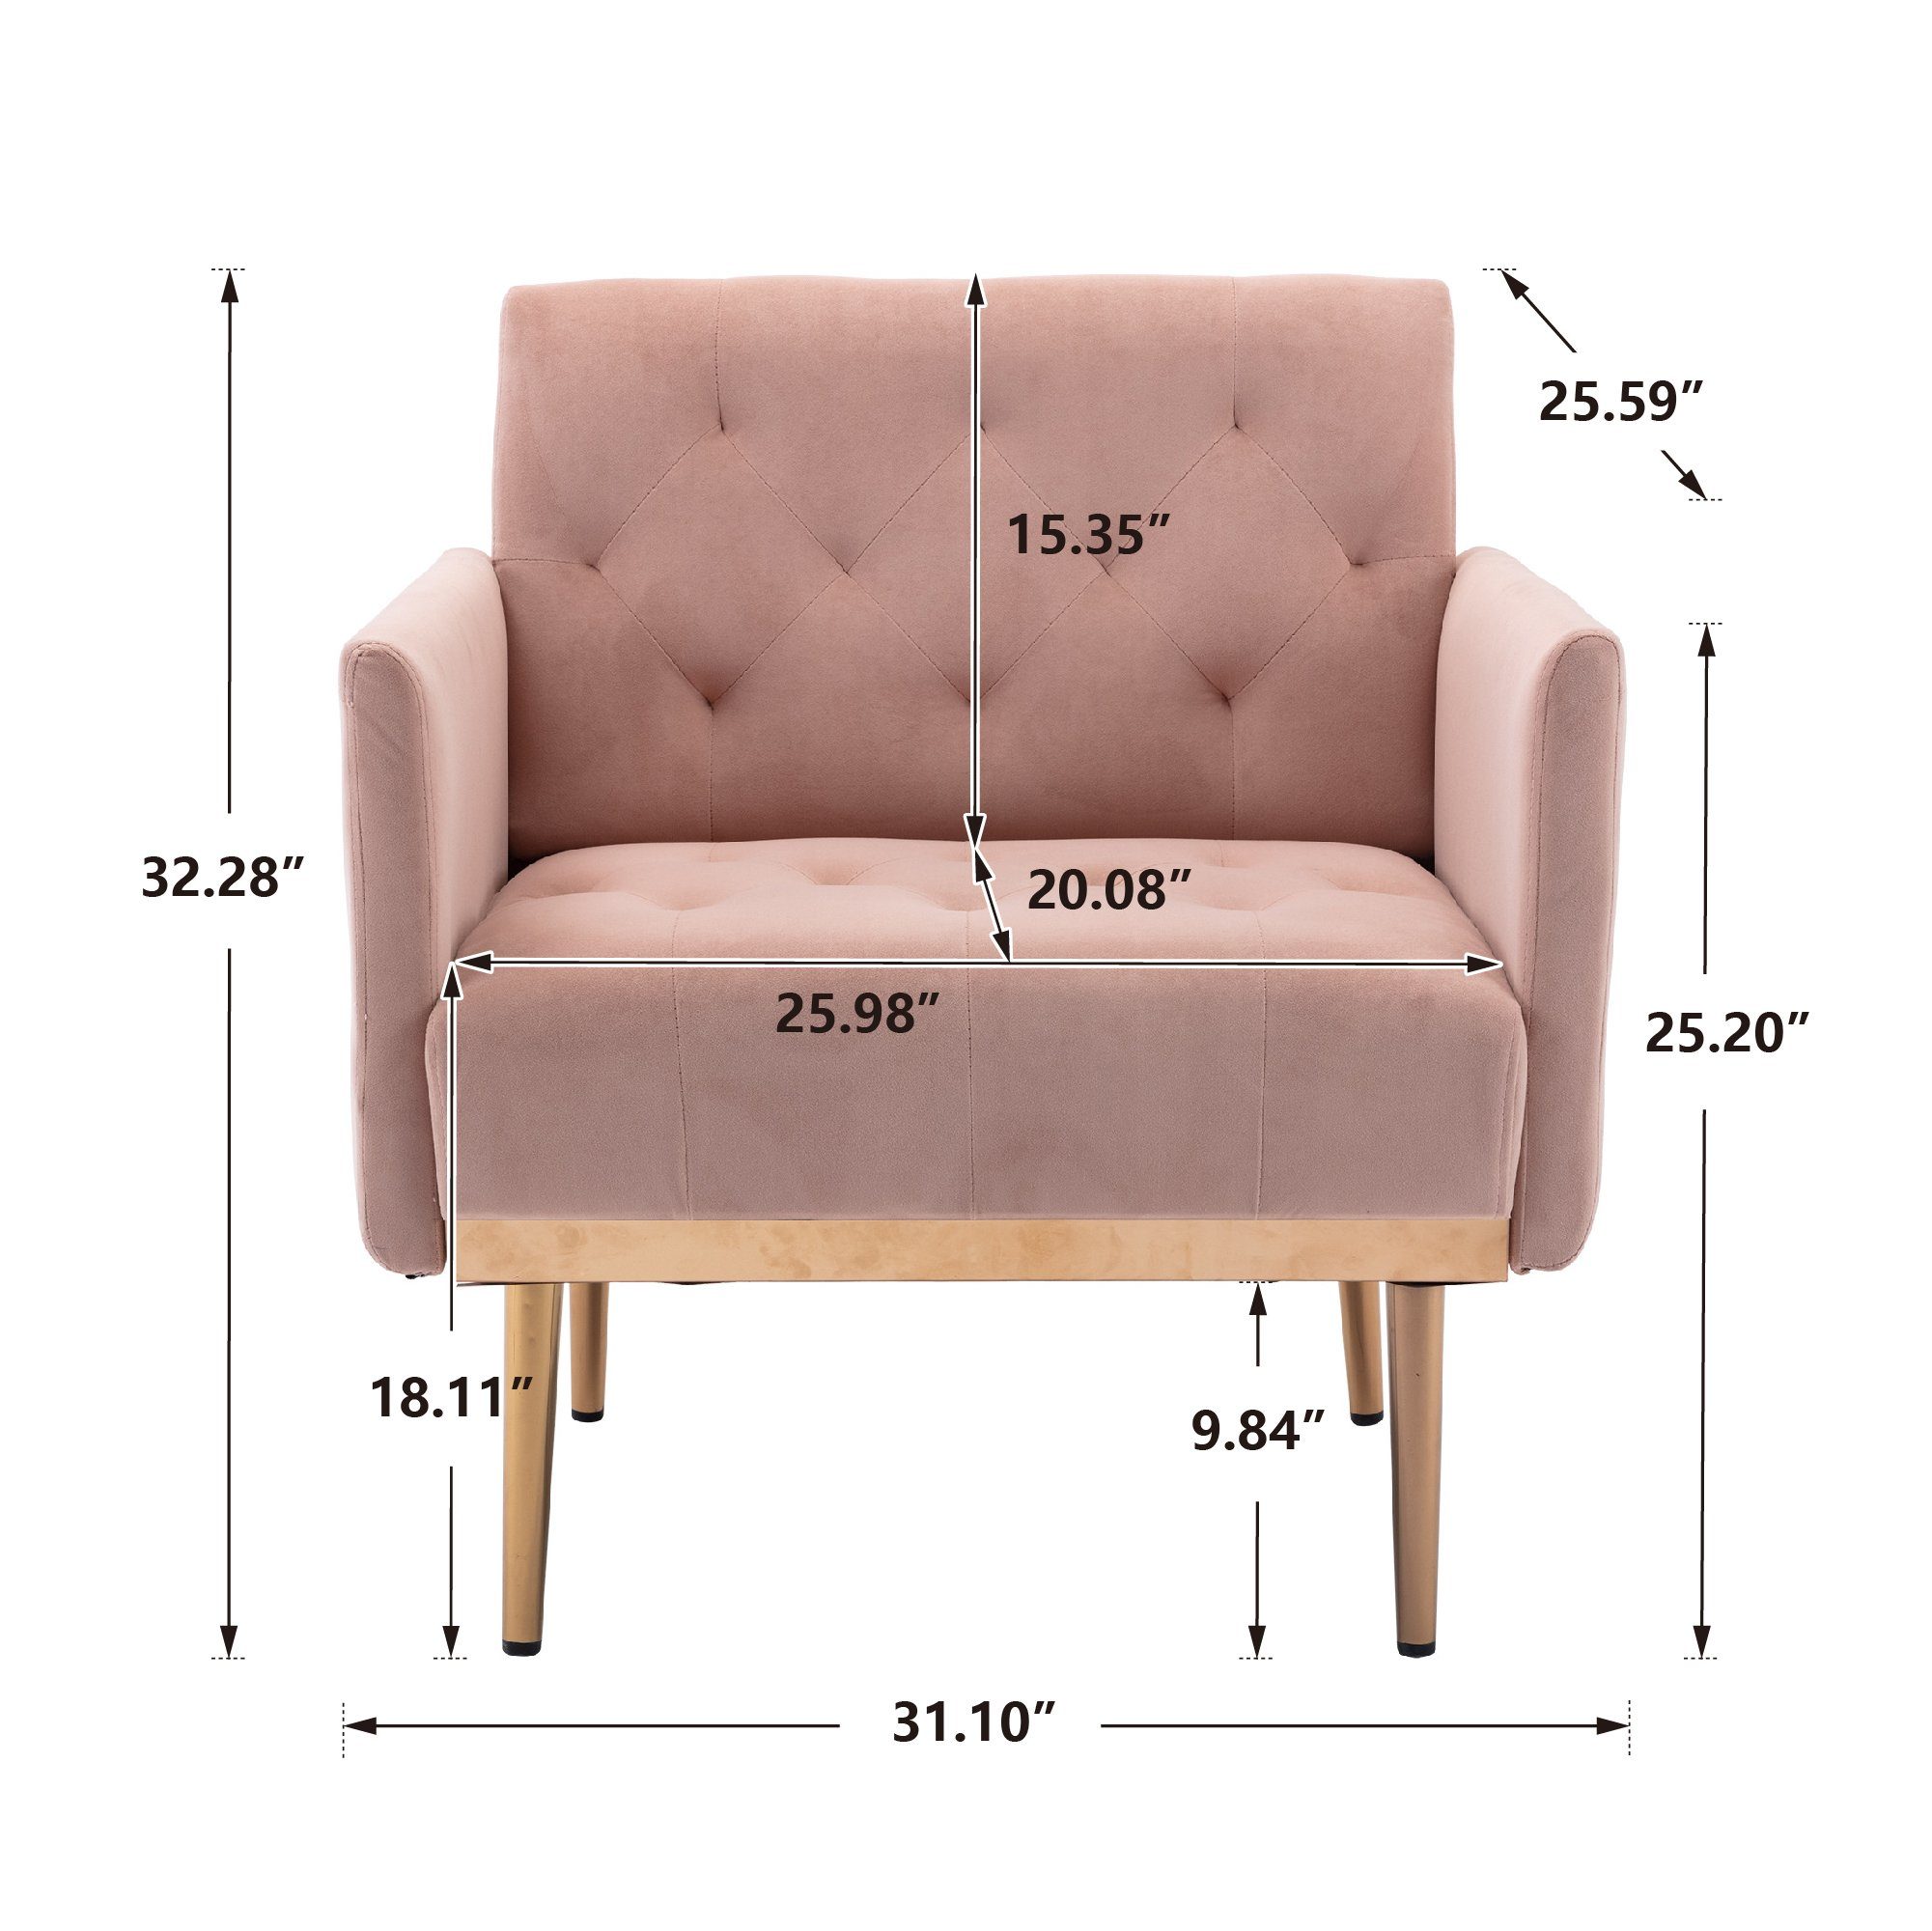 roségoldenen REDOM rosa Stuhl, Esszimmerstuhl mit Akzentstuhl Freizeitsessel Füßen,Vierbeiniger